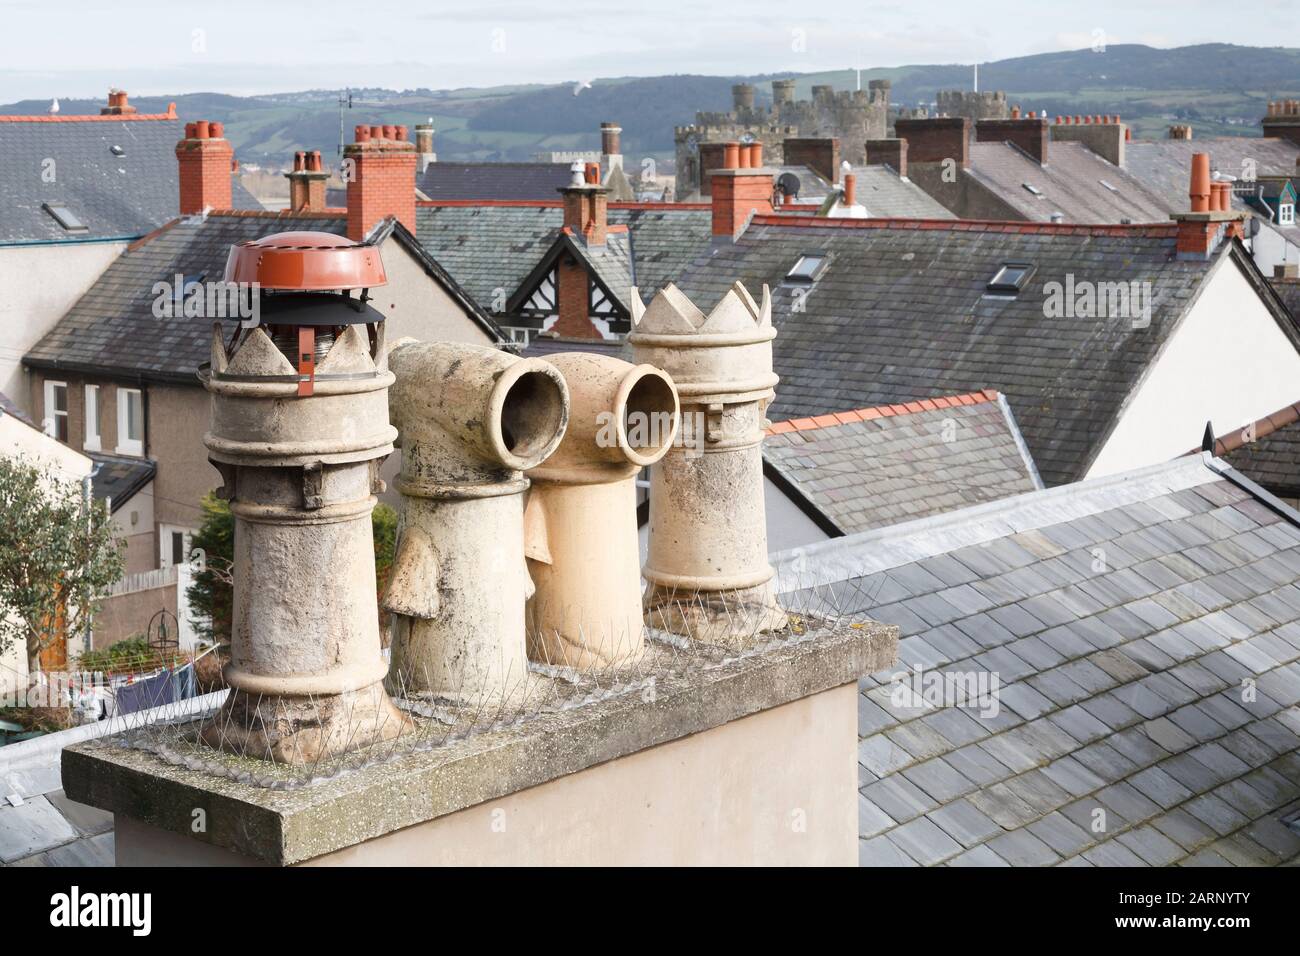 Kamintöpfe und Dächer in einer typischen walisischen Stadt in Großbritannien. Mit kunstvollen viktorianischen Cowls. Conwy, Wales Stockfoto